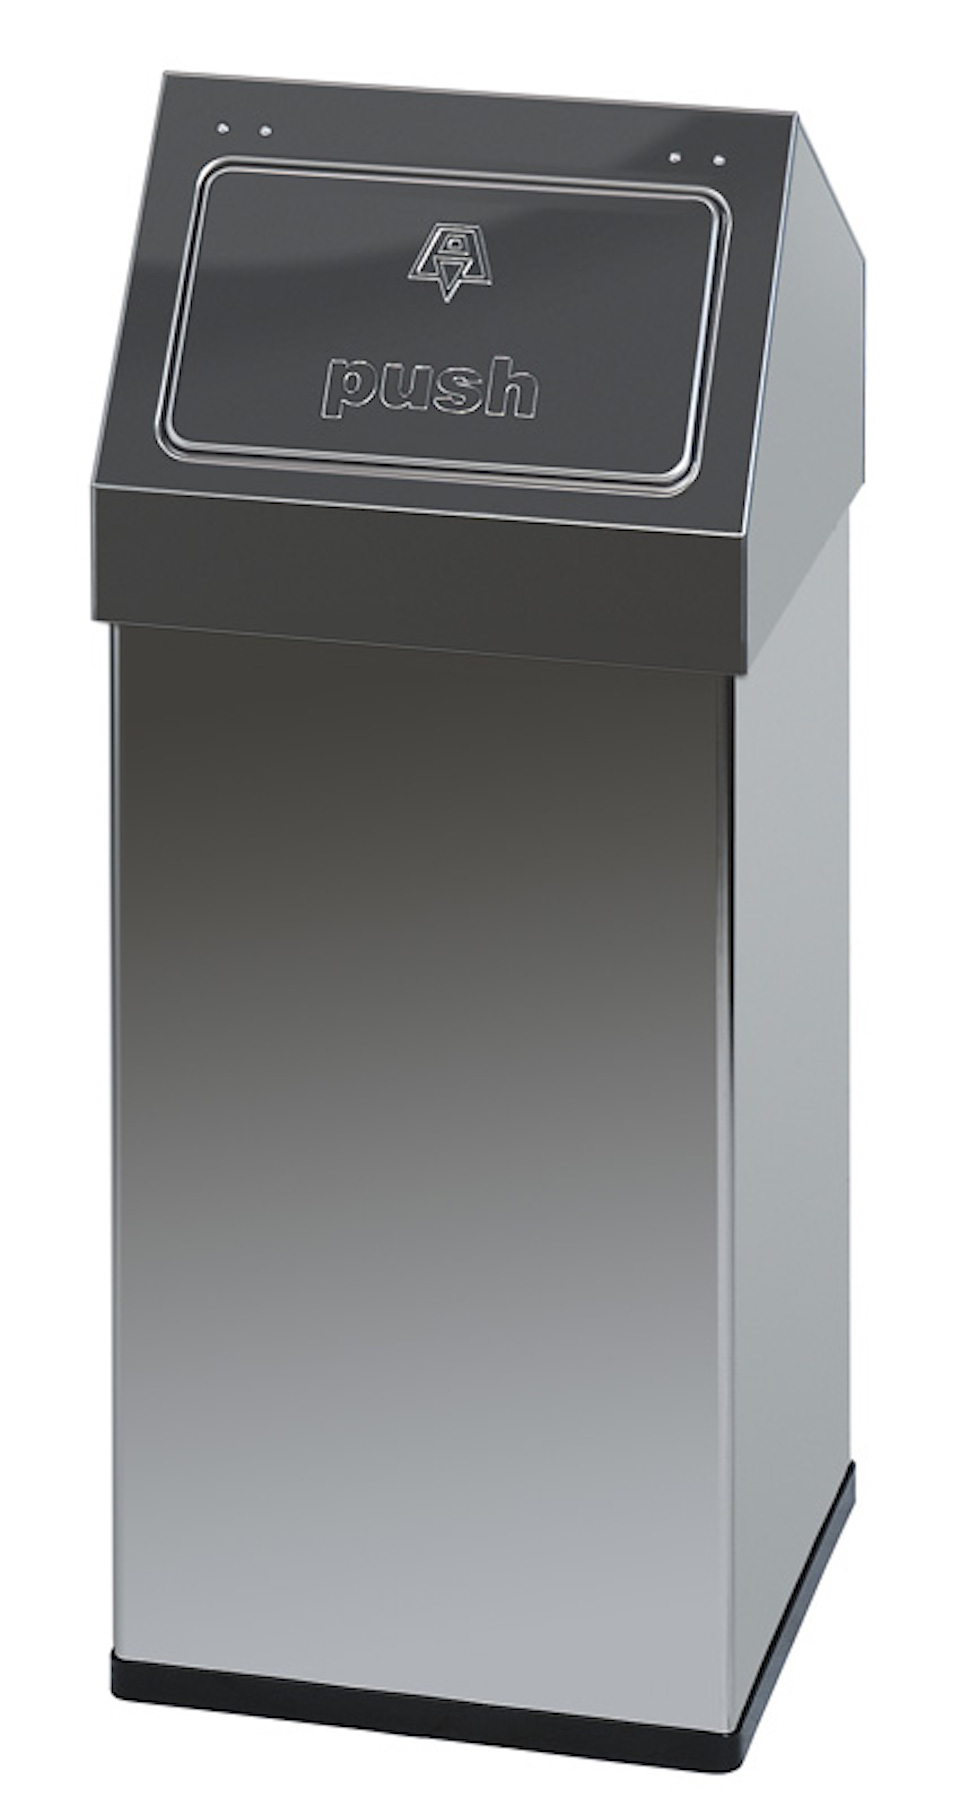 Eckiger Edelstahl Abfallbehälter Haiti mit Push-Deckel | 55 Liter, HxBxT 77x30x30cm | Silber